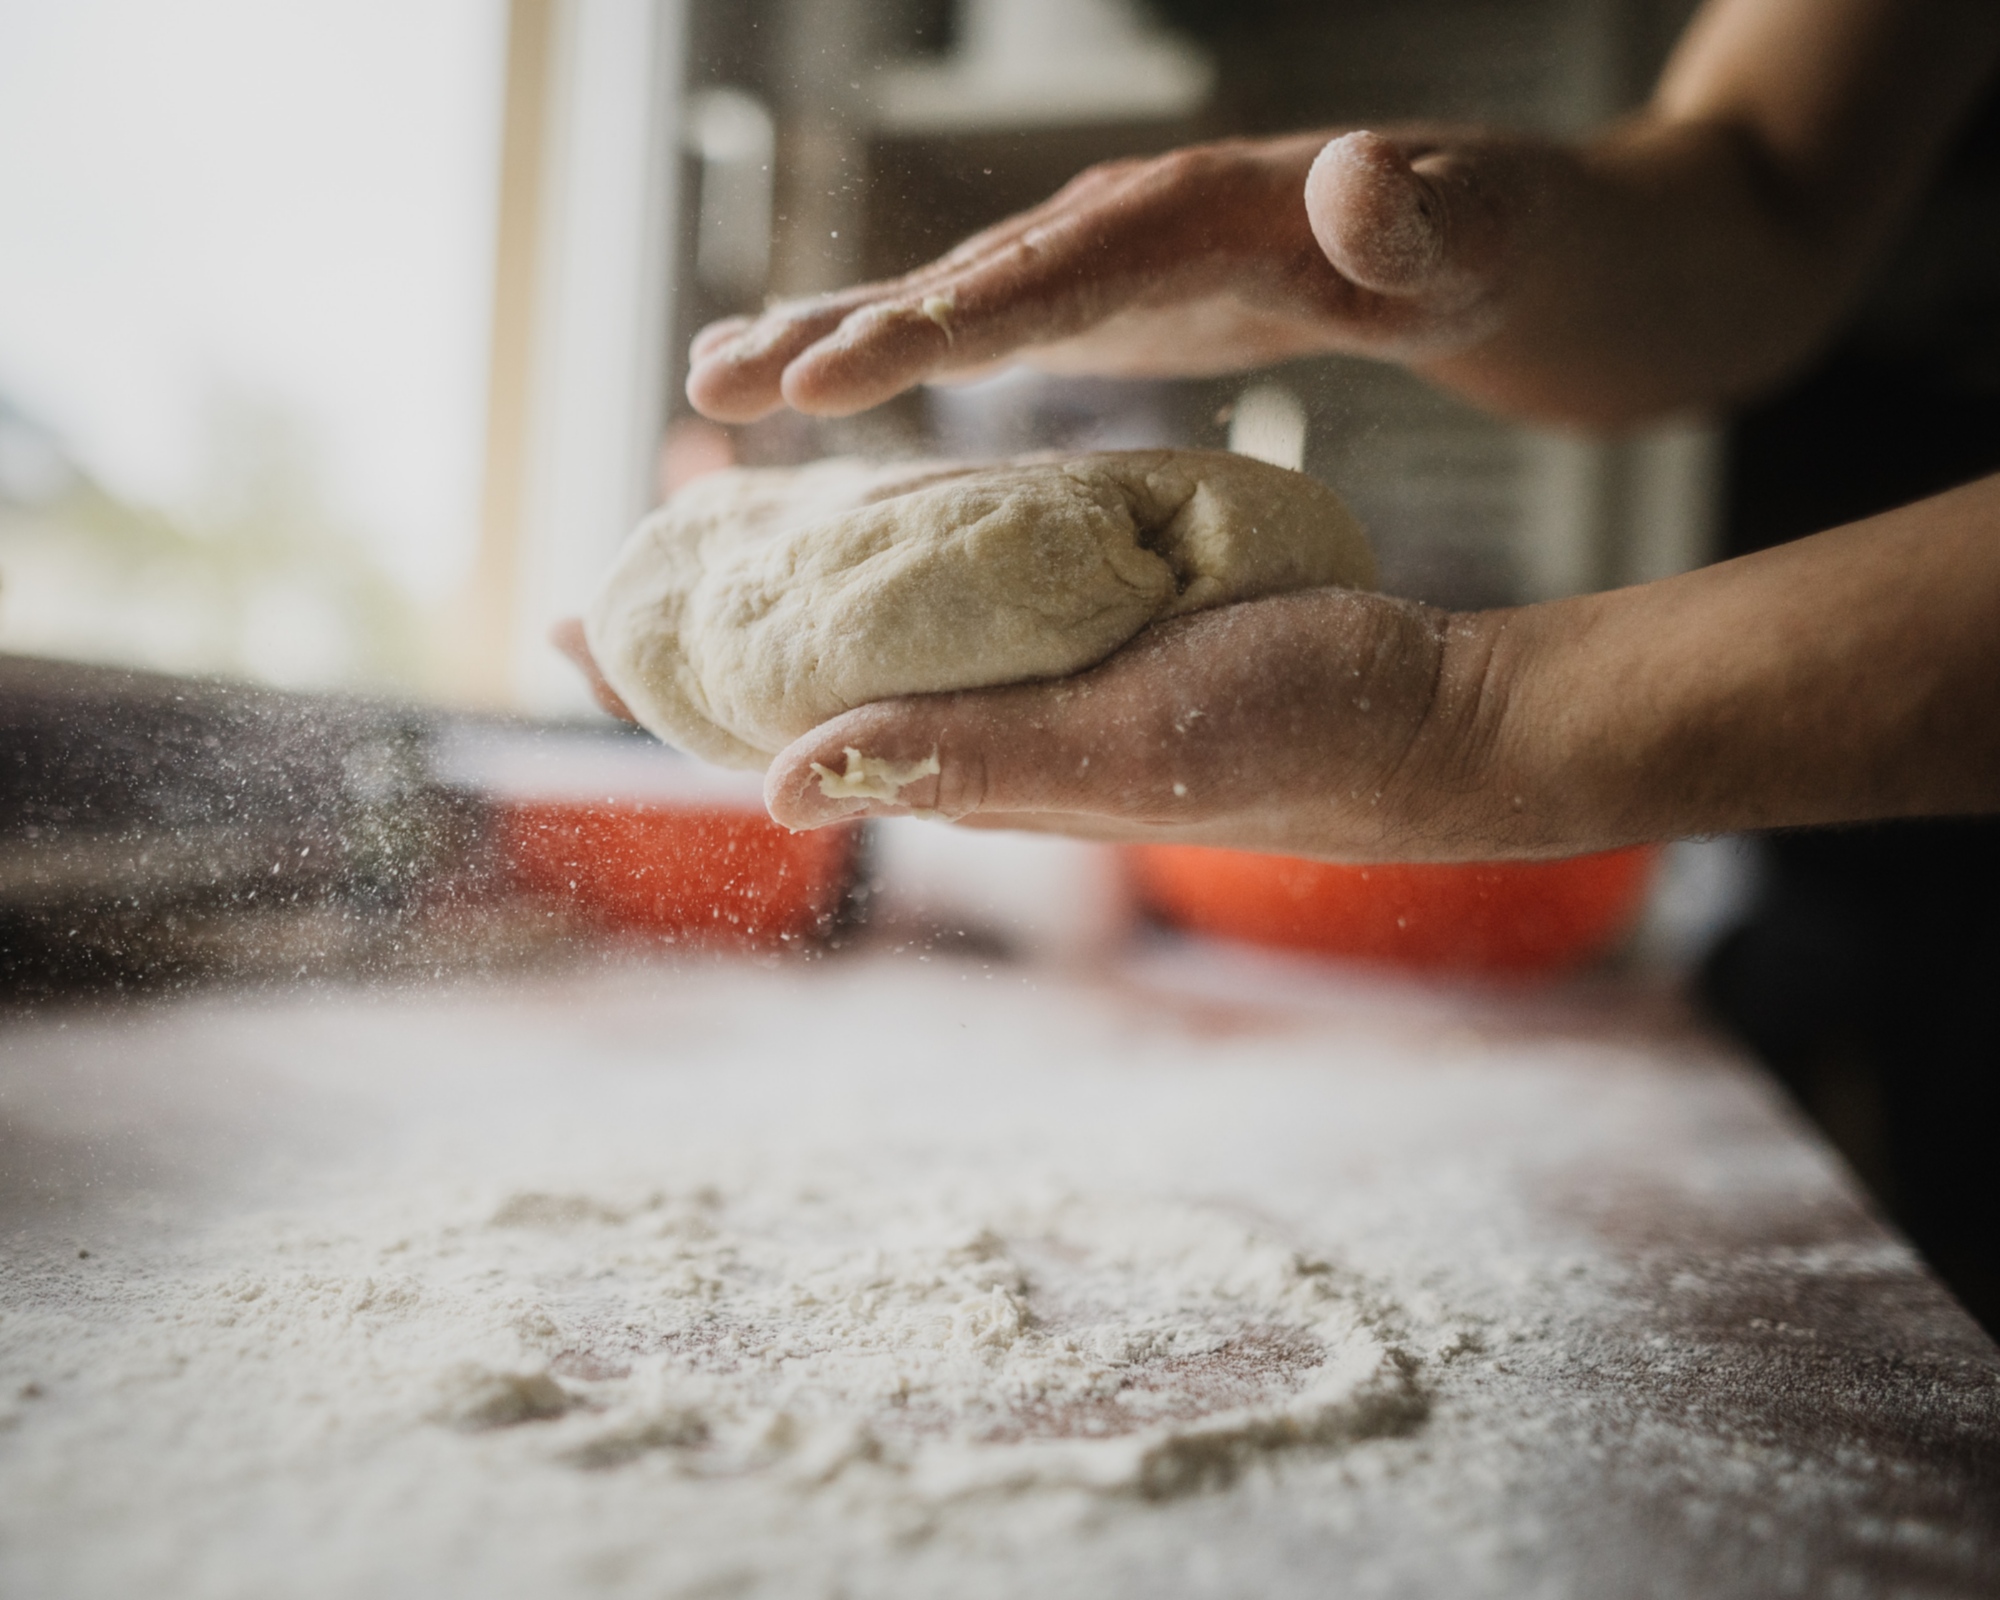 Lezione di cucina per scoprire i segreti della preparazione della pizza e della focaccia toscana